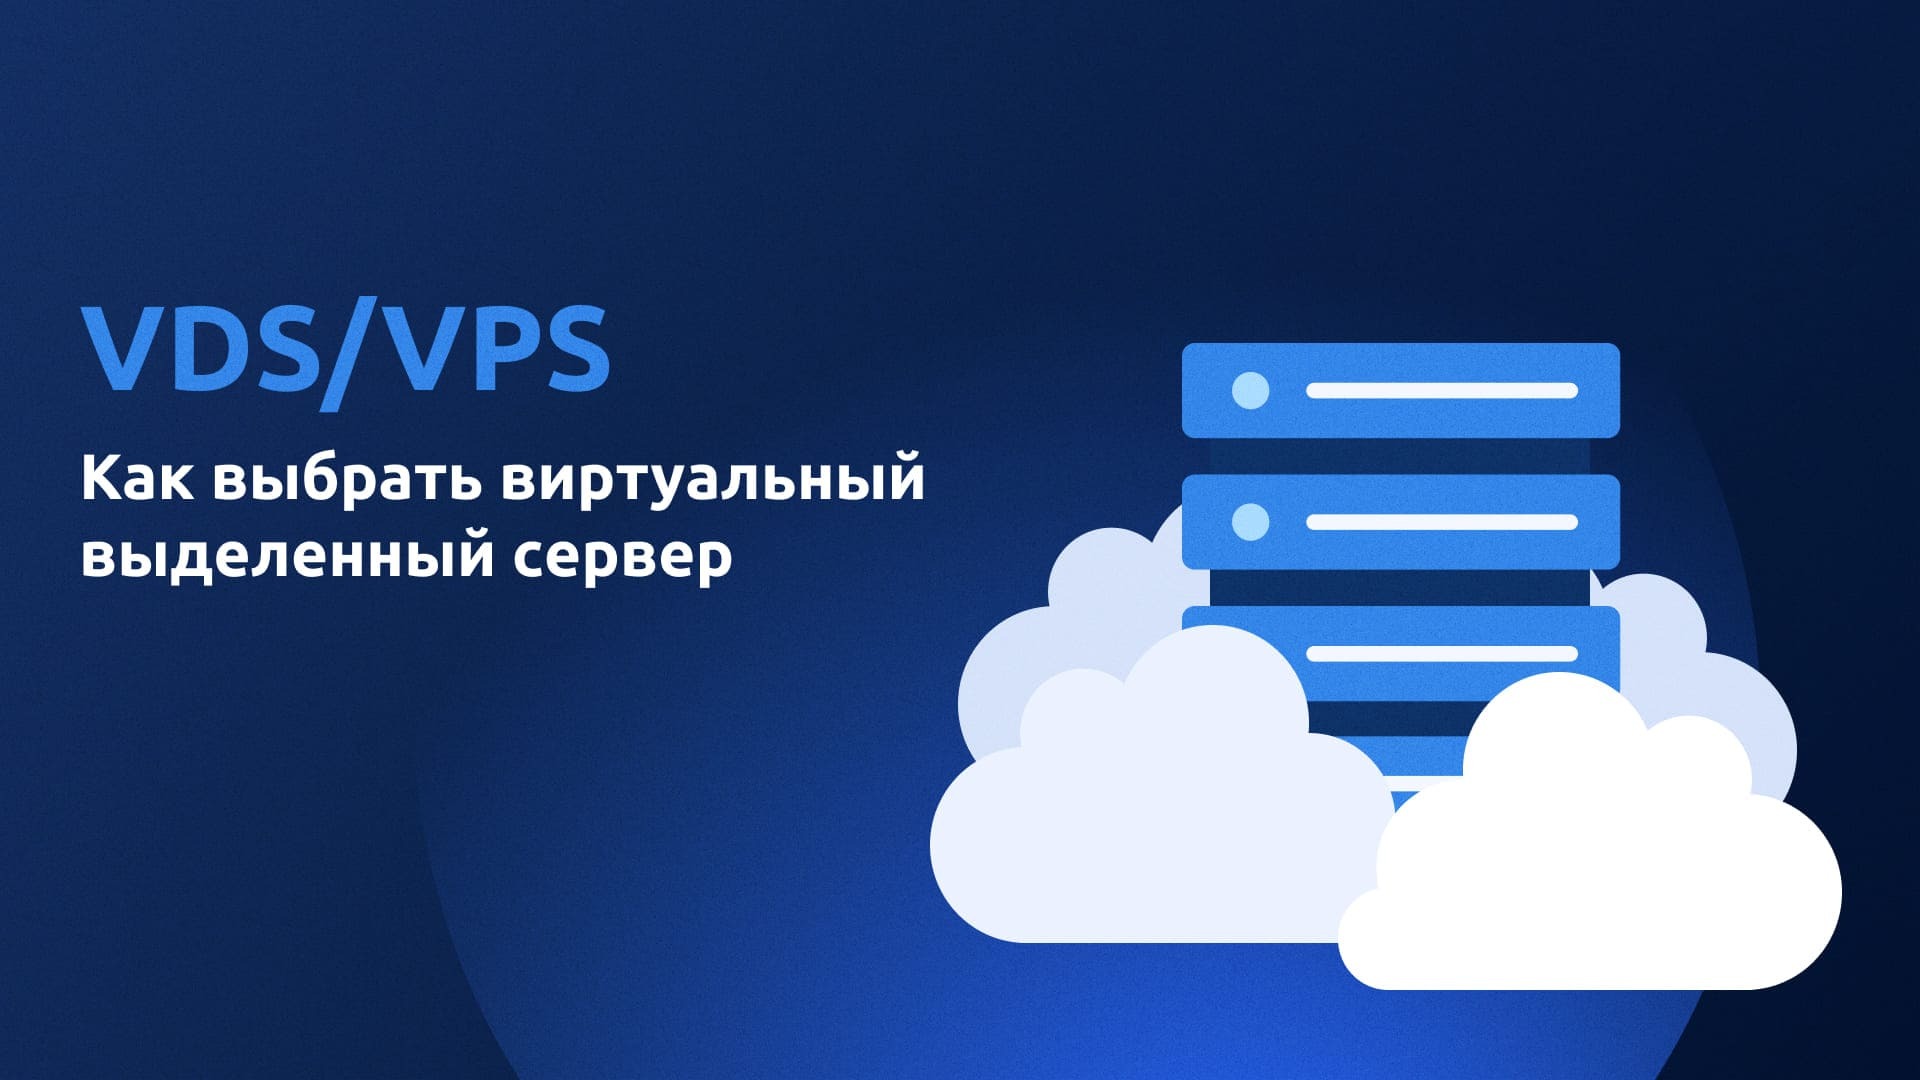 VDS/VPS: Как выбрать виртуальный сервер